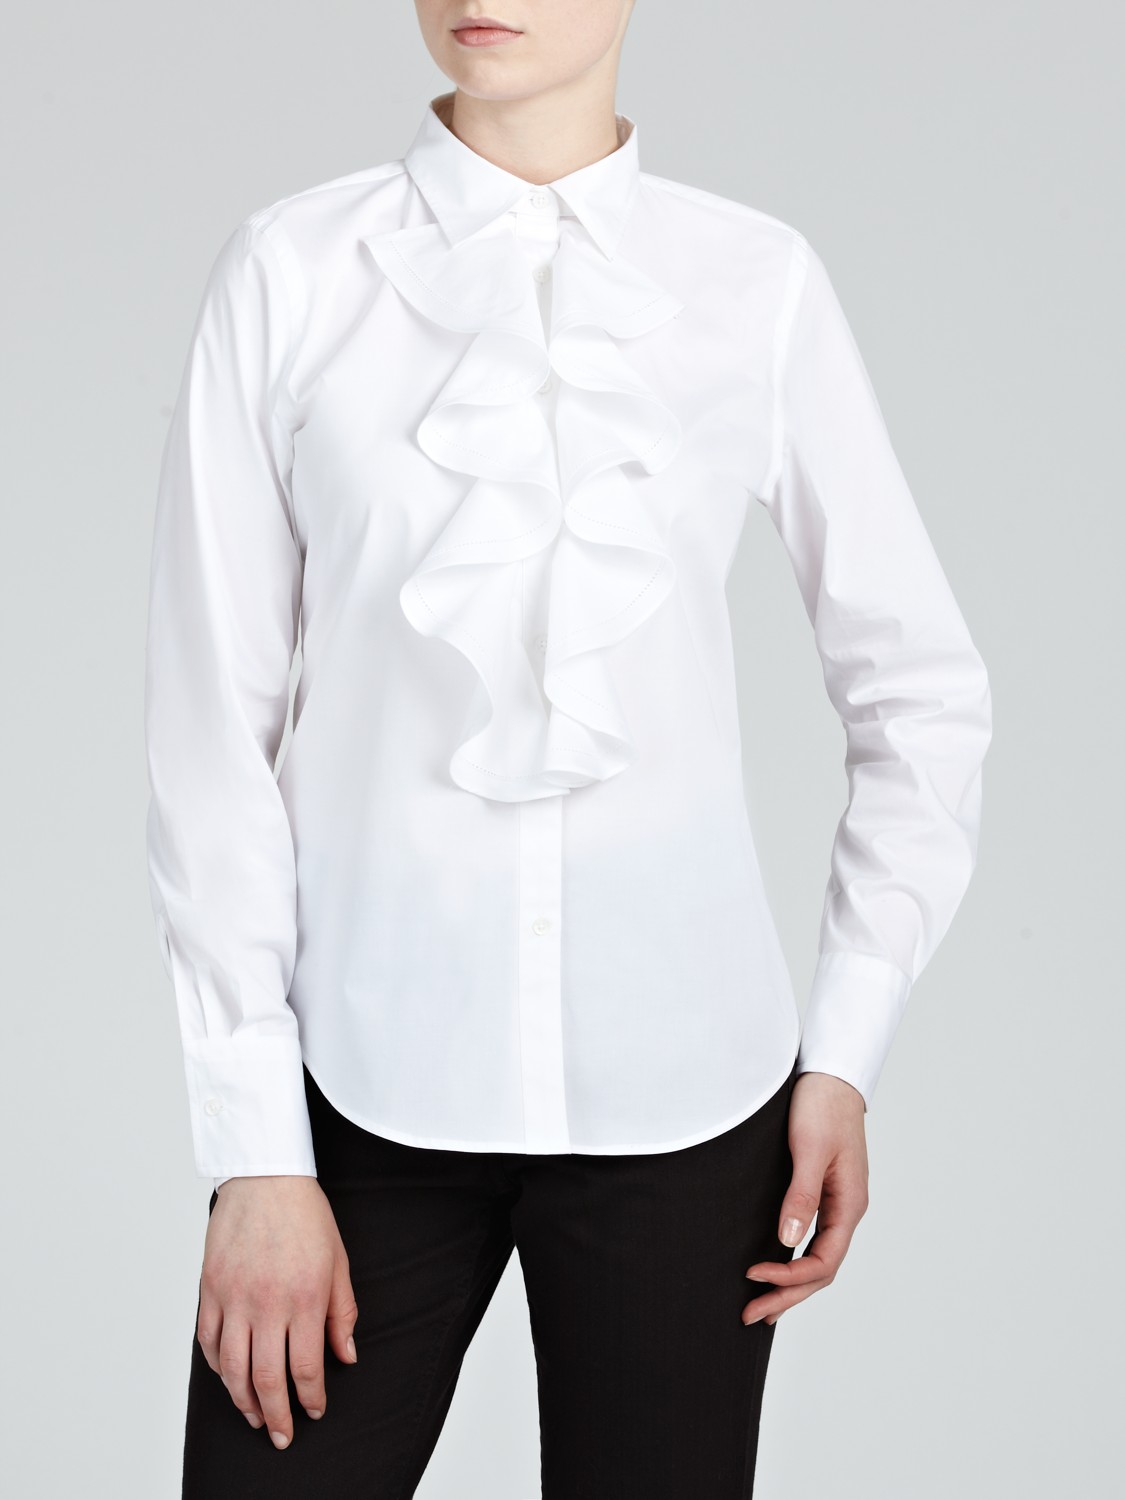 Lauren by Ralph Lauren Long Sleeve Ruffle Blouse in White - Lyst